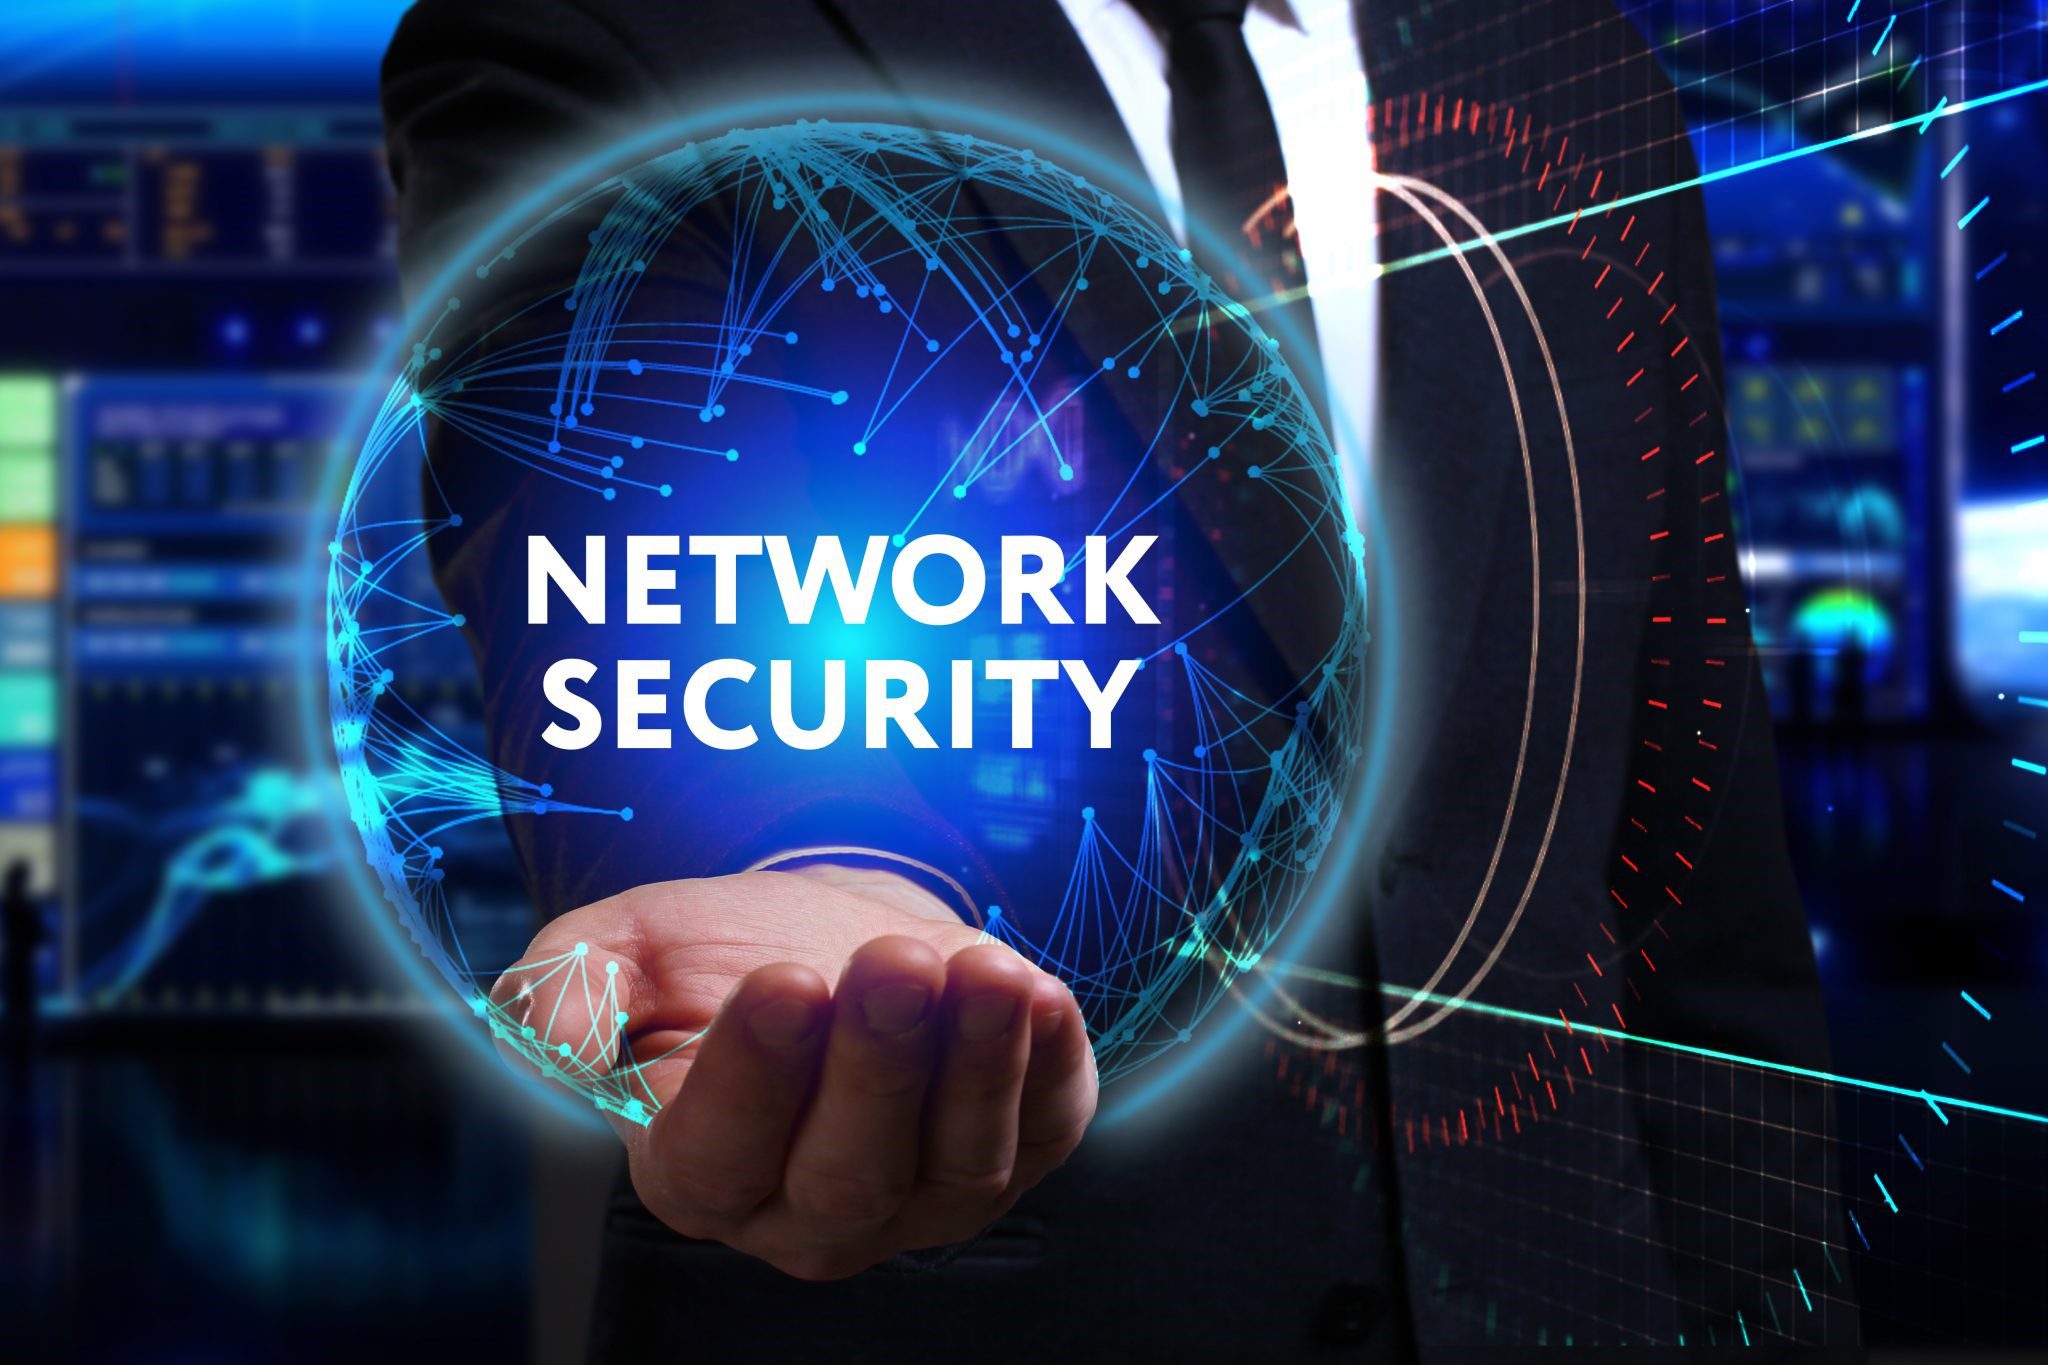 Network Security sẽ là xu hướng an ninh mạng trong 2021 và các năm sau này.